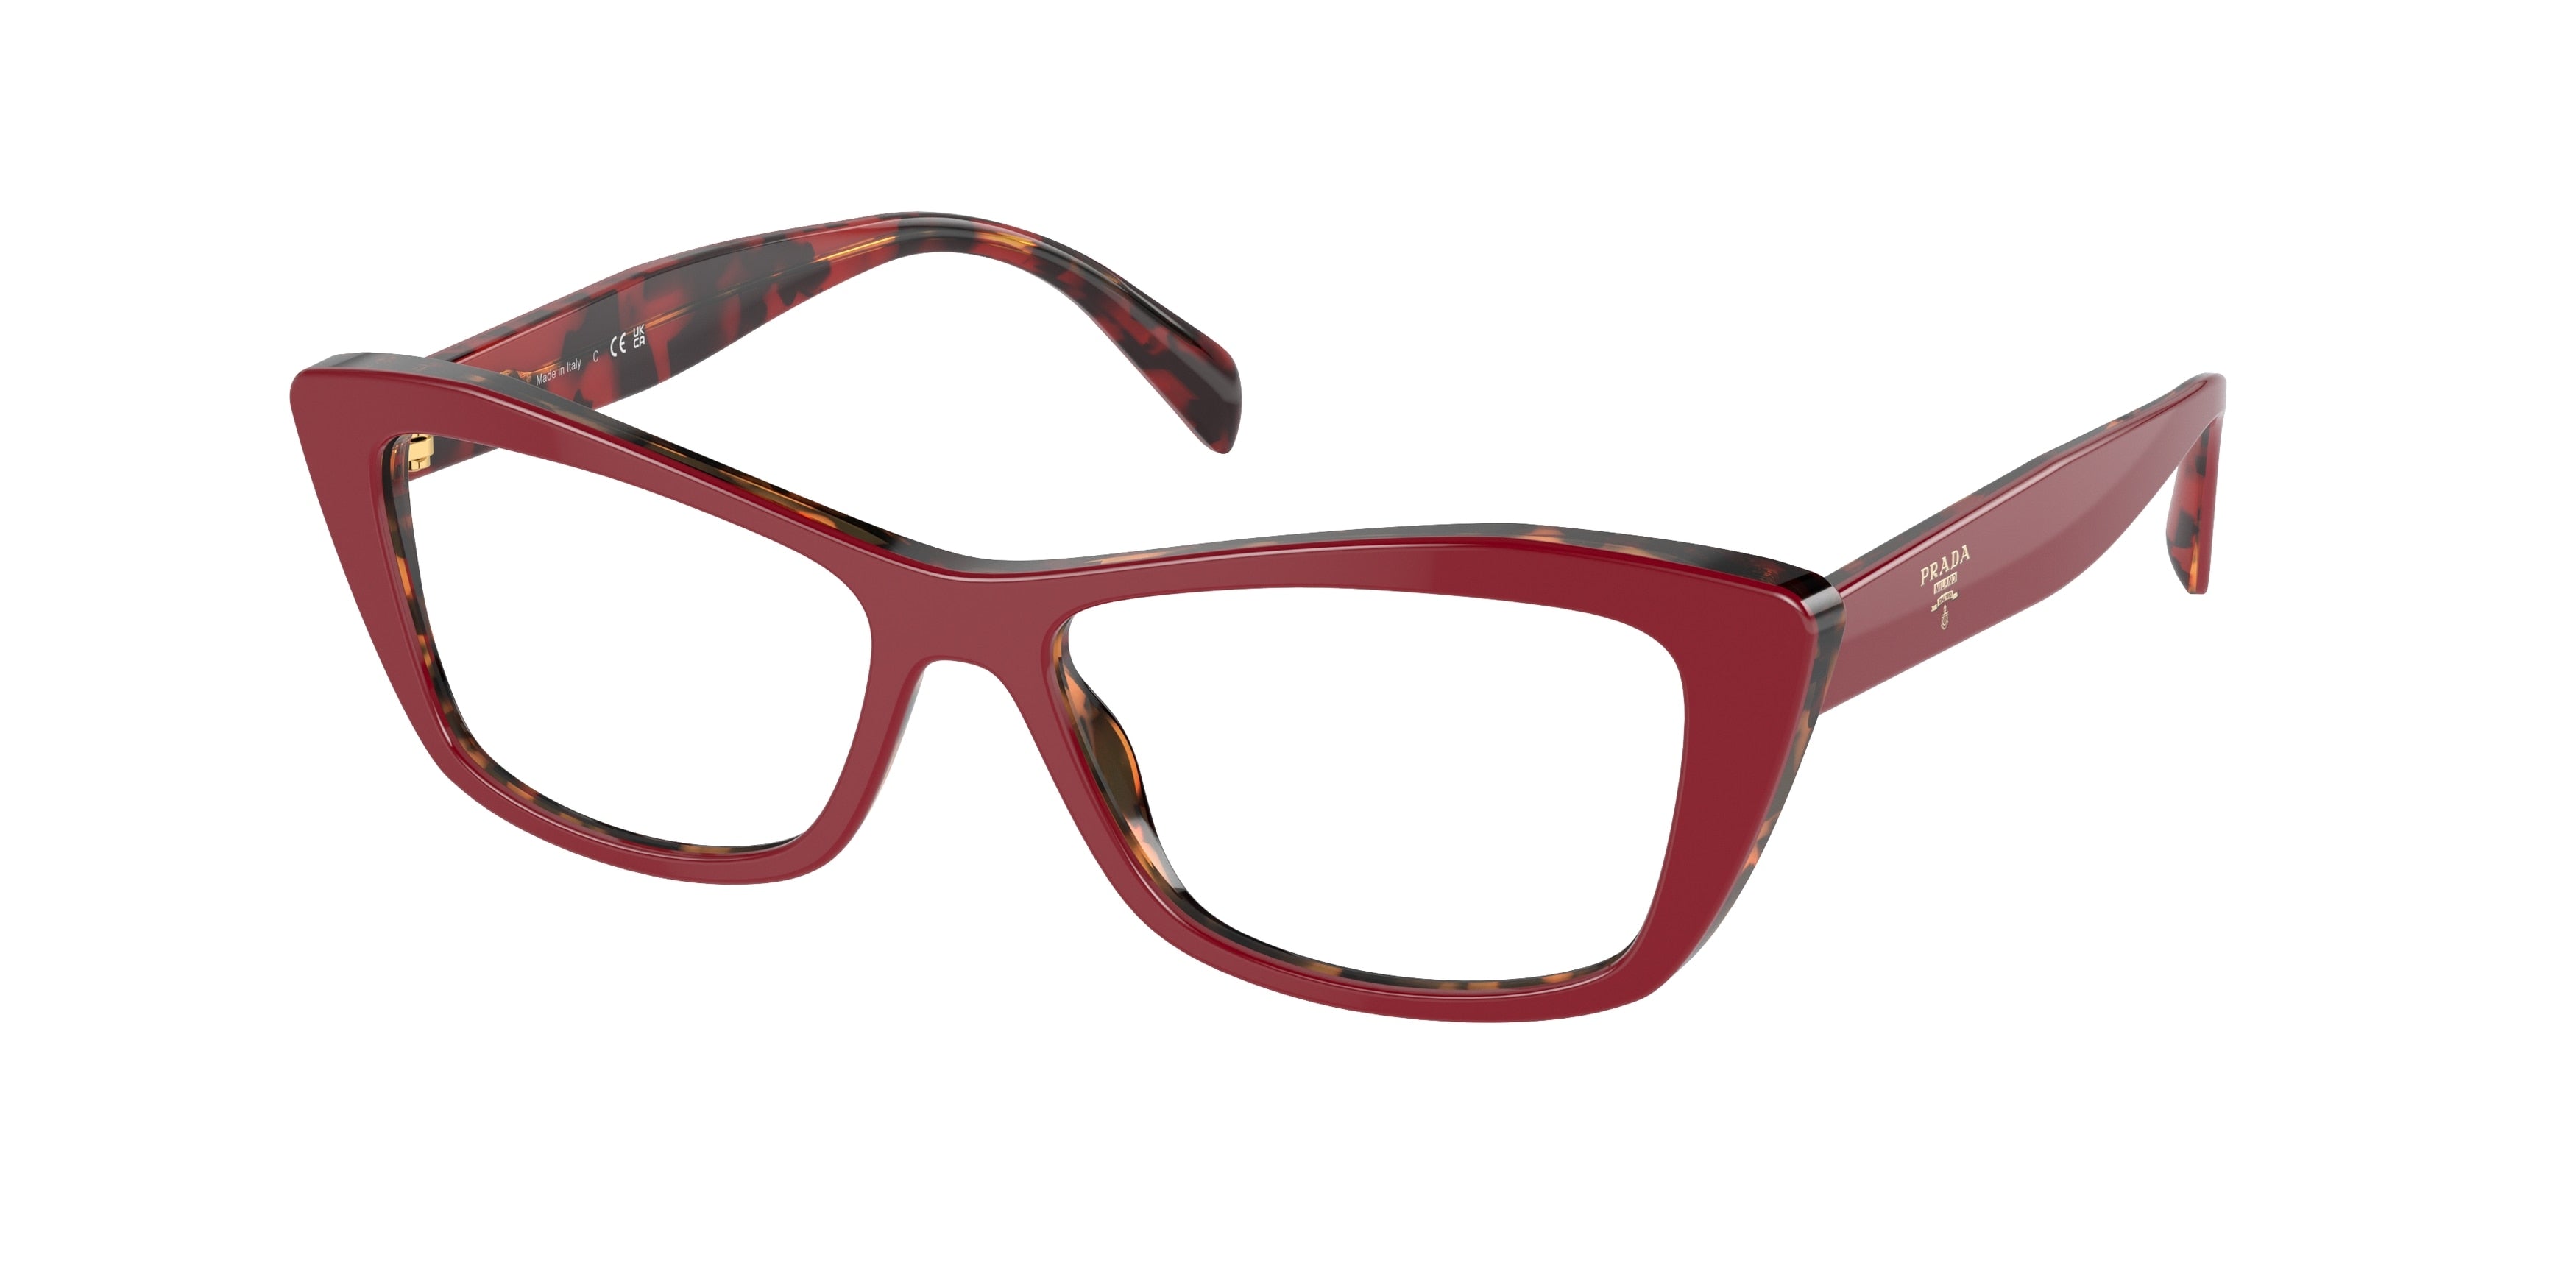 Prada PR15XV Cat Eye Eyeglasses  07C1O1-Red/Havana 53-140-15 - Color Map Red